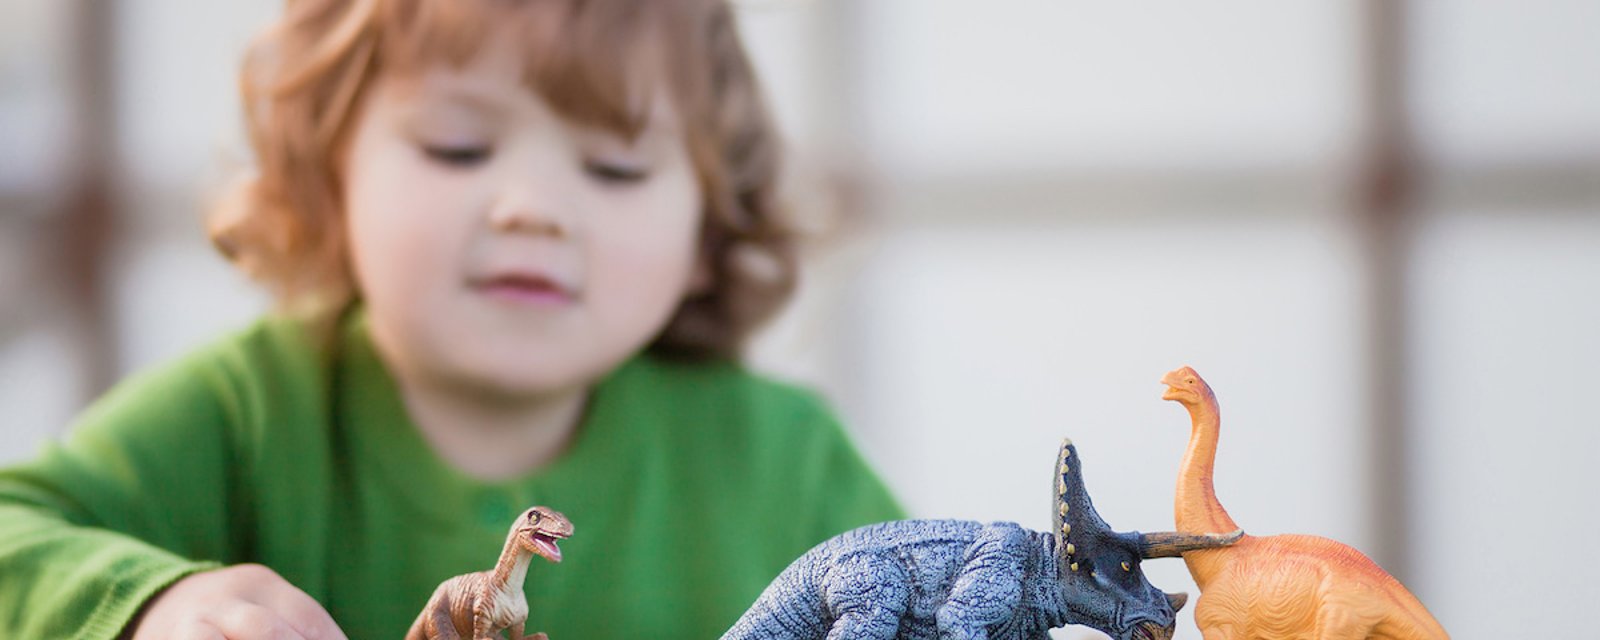 Votre enfant est passionné de dinosaures? Il possède probablement une intelligence supérieure!